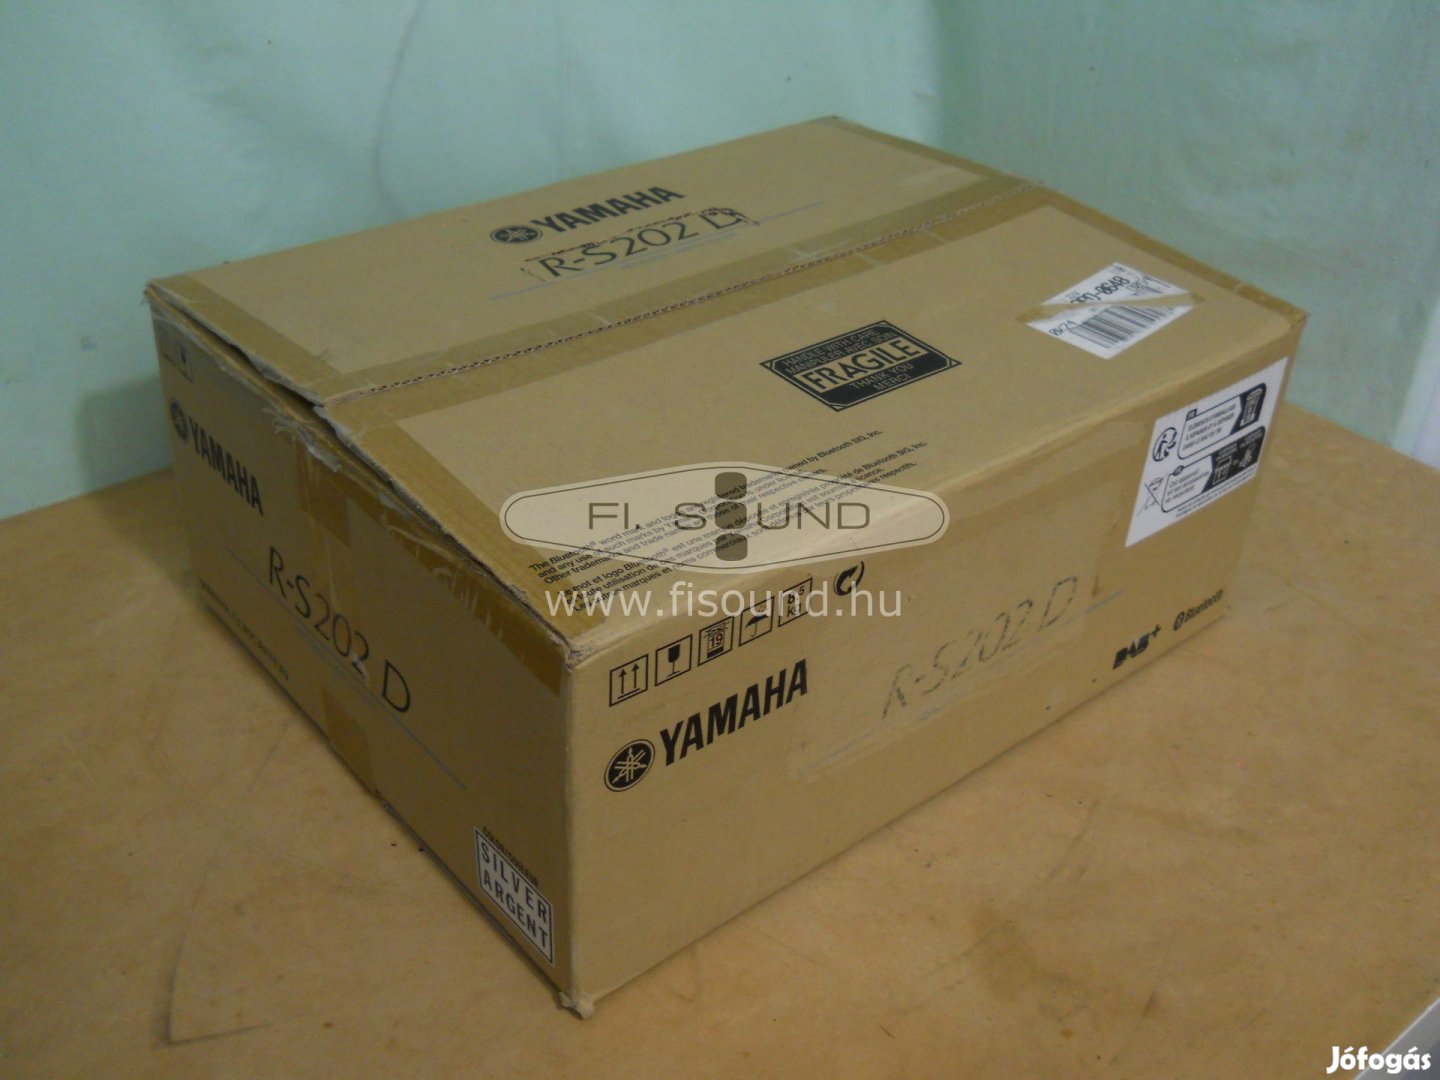 Yamaha R-S202D ,(3.)200W,8-16ohm,4 hangfalas sztereo erősítő